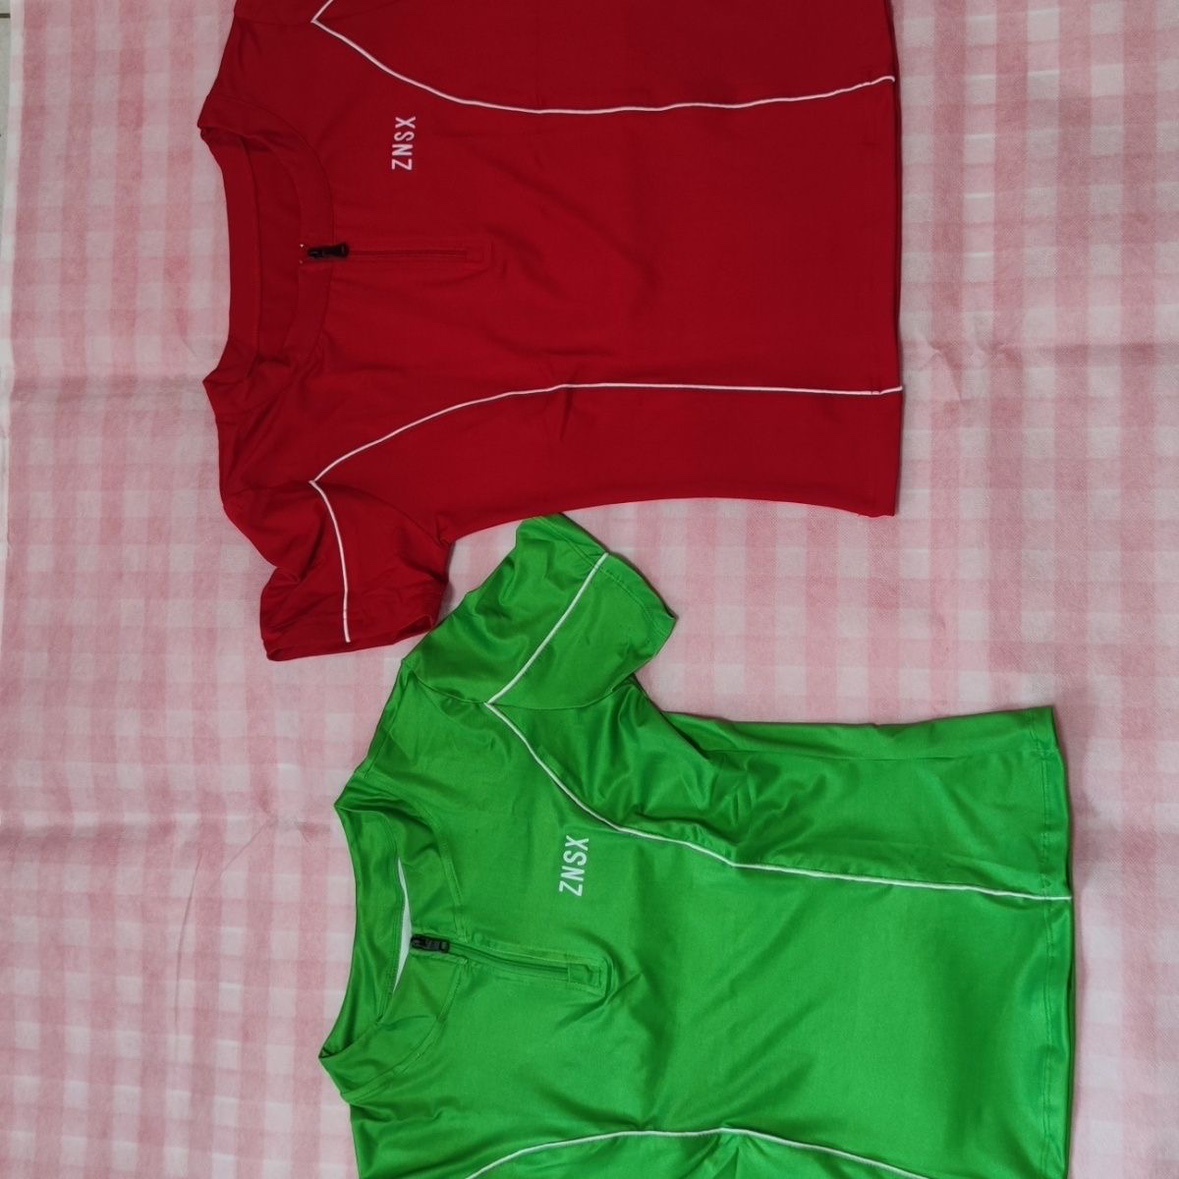 张妮塑形新款红色绿色户外透气吸汗薄款半拉链瑜伽T恤上衣短袖